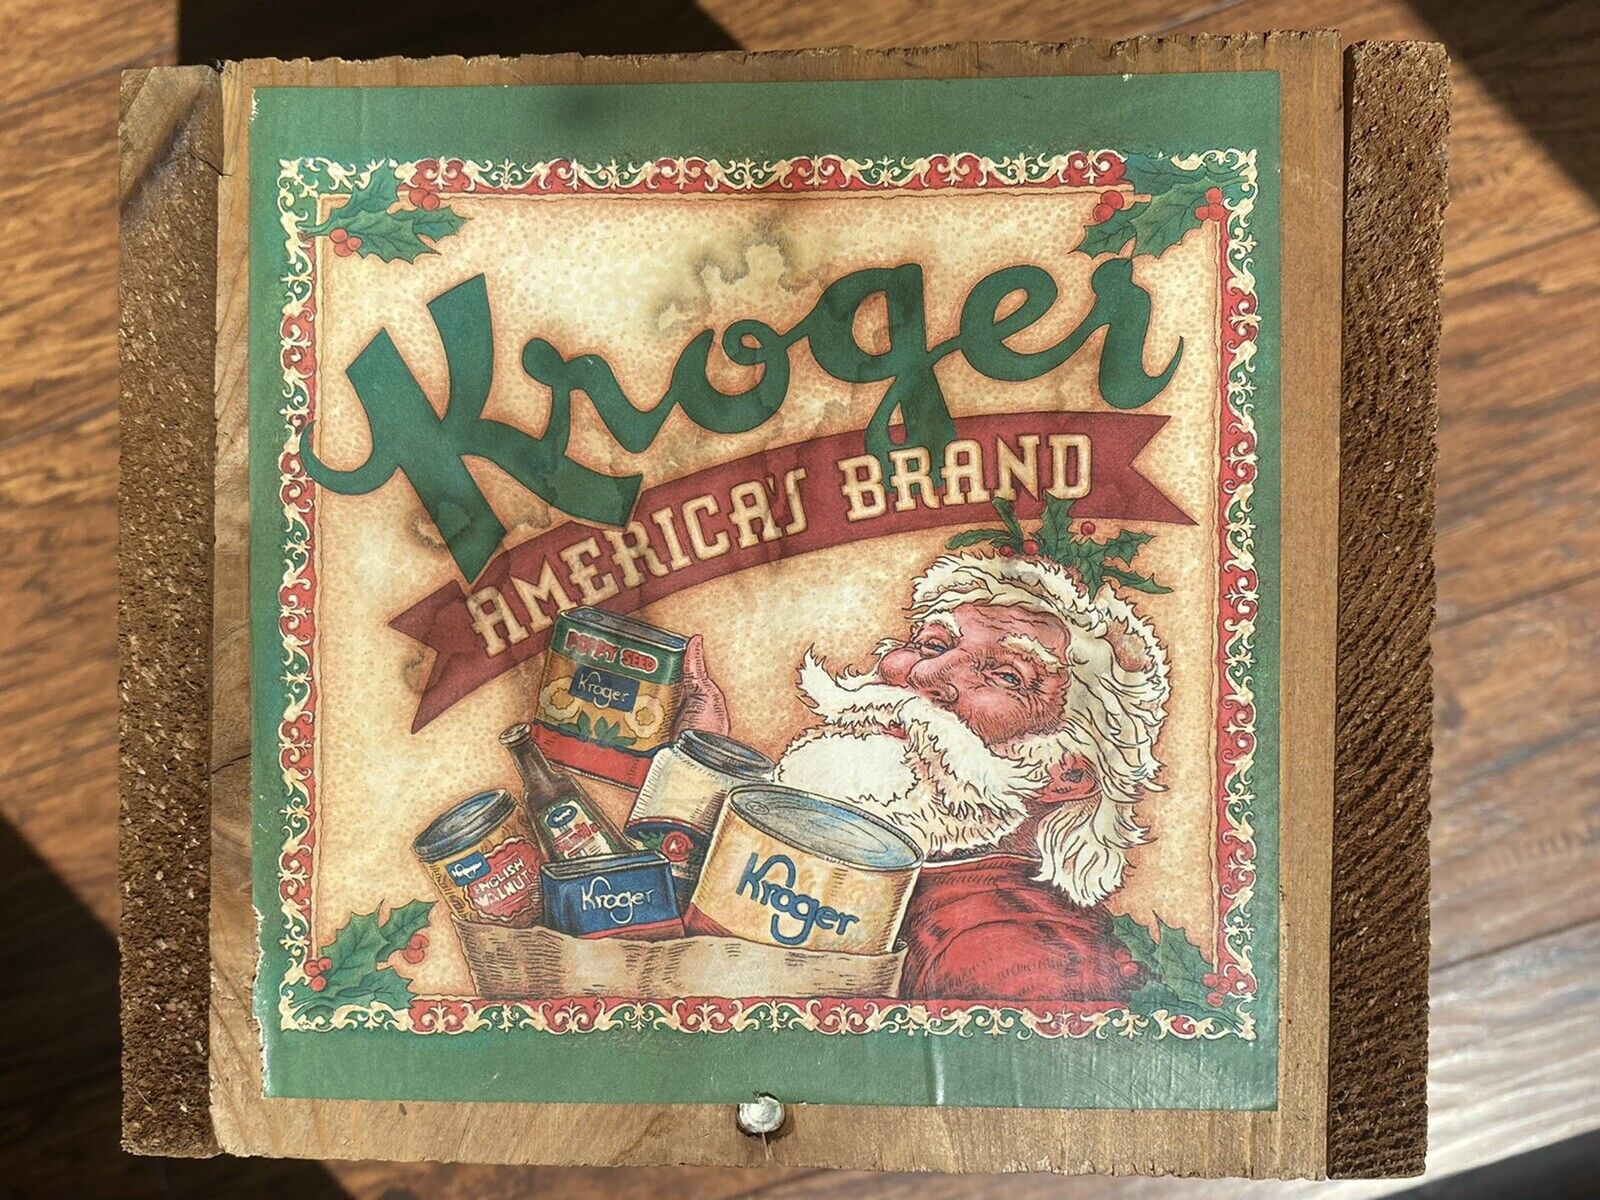 Vintage Kroger Wood Crate America's Brand Grocery Bakery Santa Claus Christmas